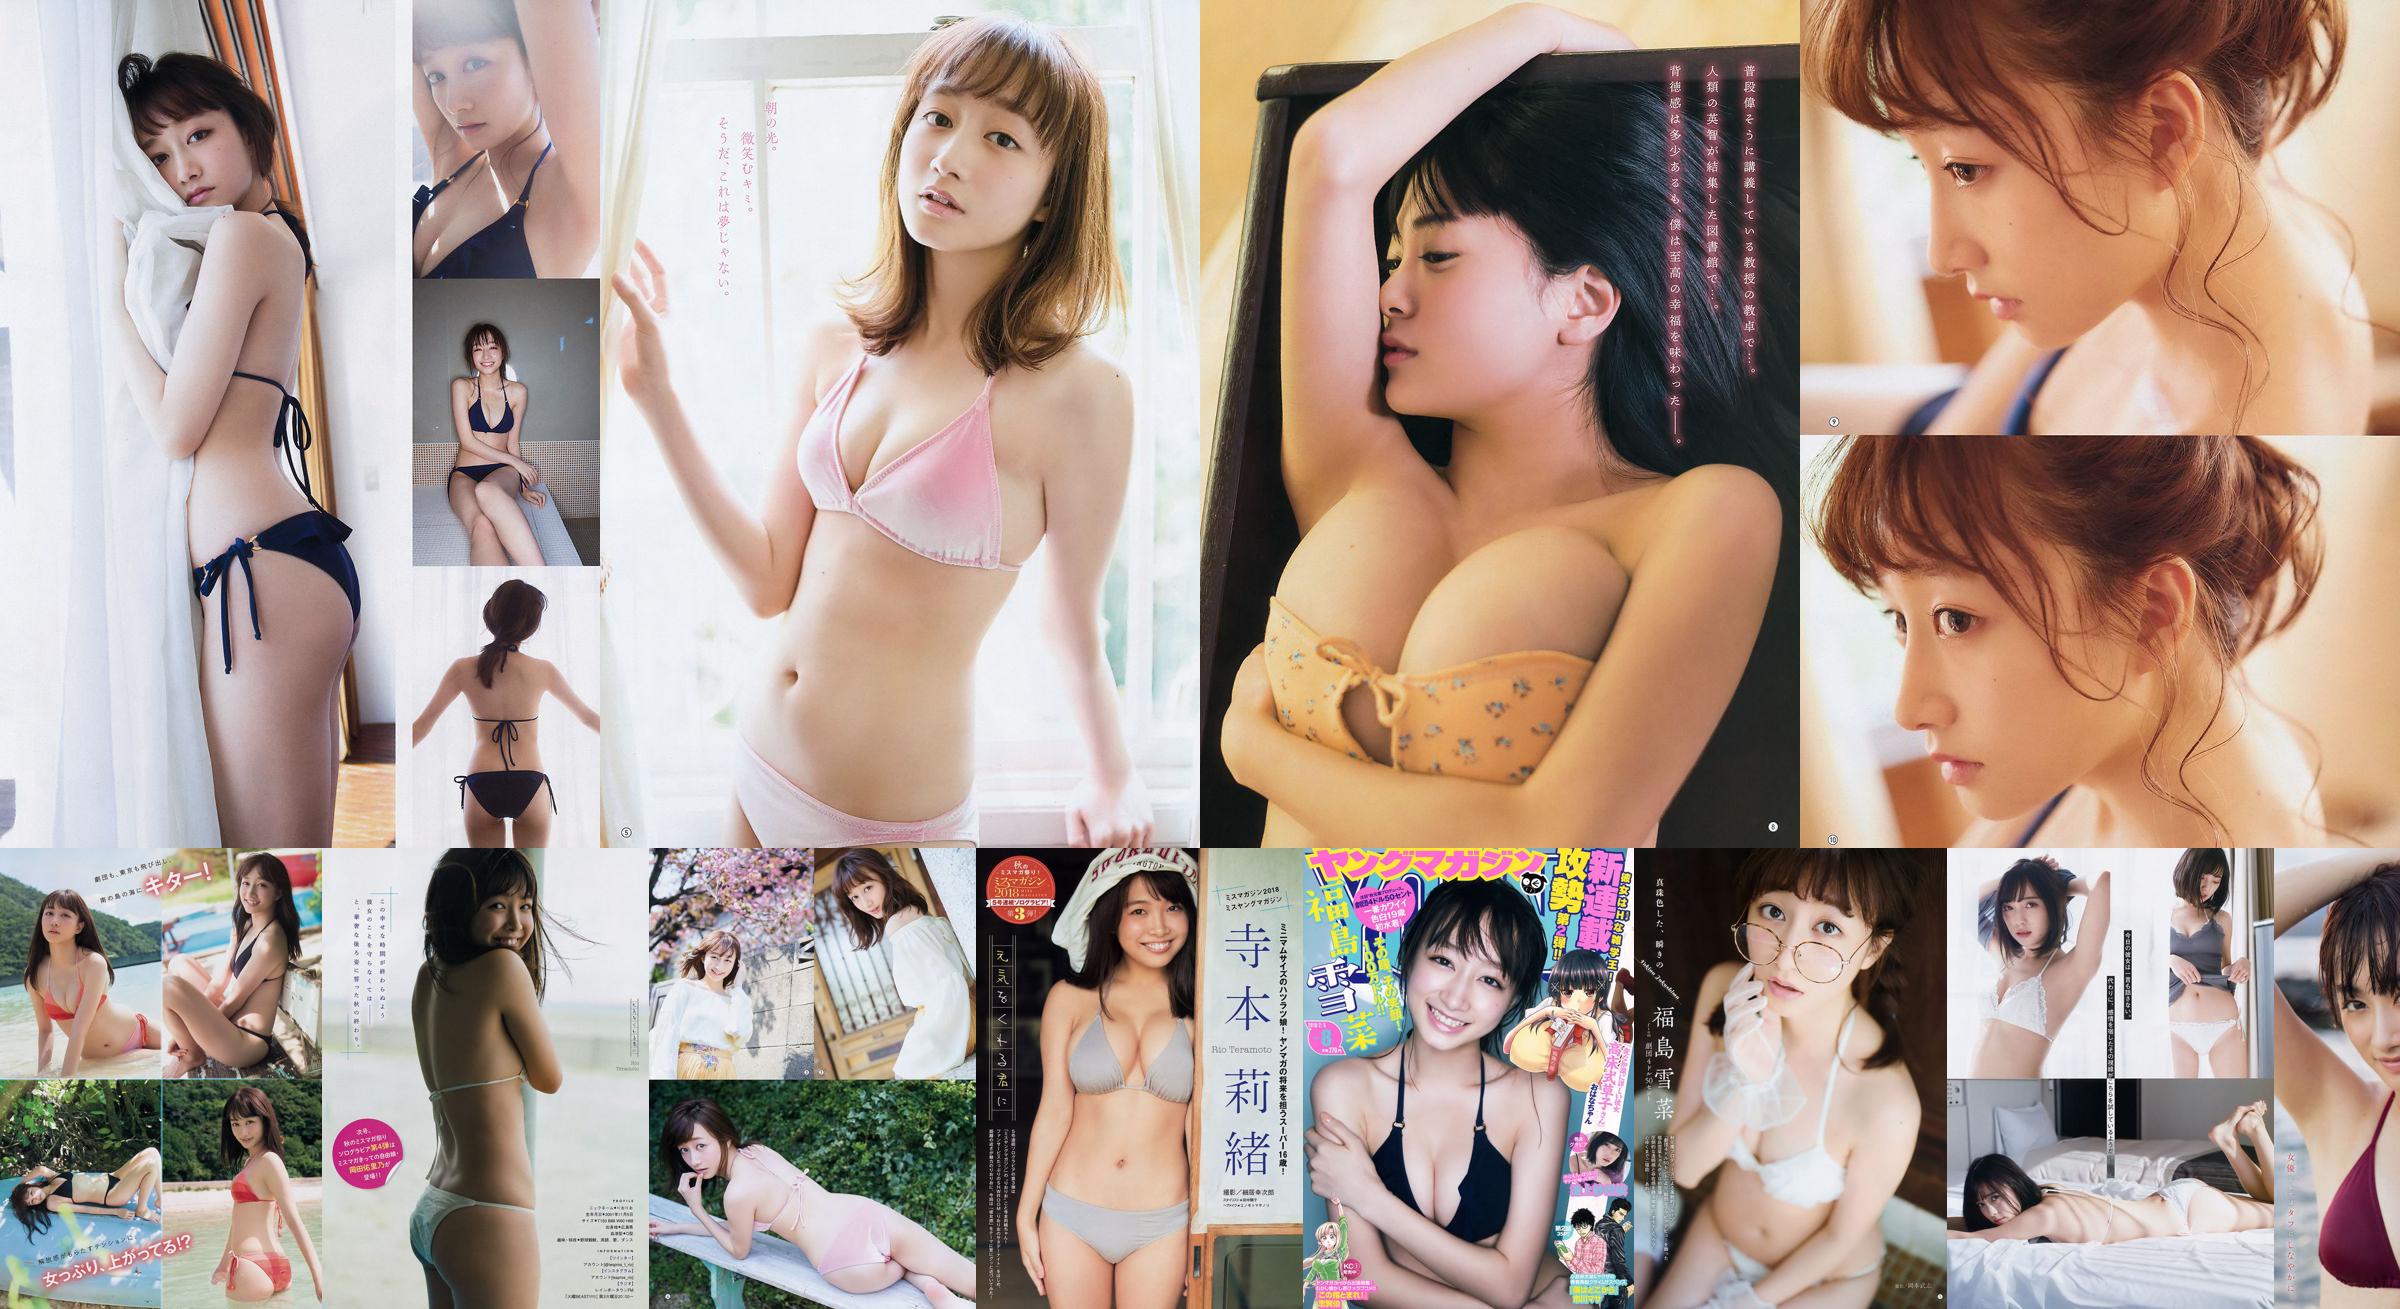 [FLASH] Yukina Fukushima Mariko Seyama Rina Asakawa Haruka 2018.11.20 Foto No.a17a08 Seite 1